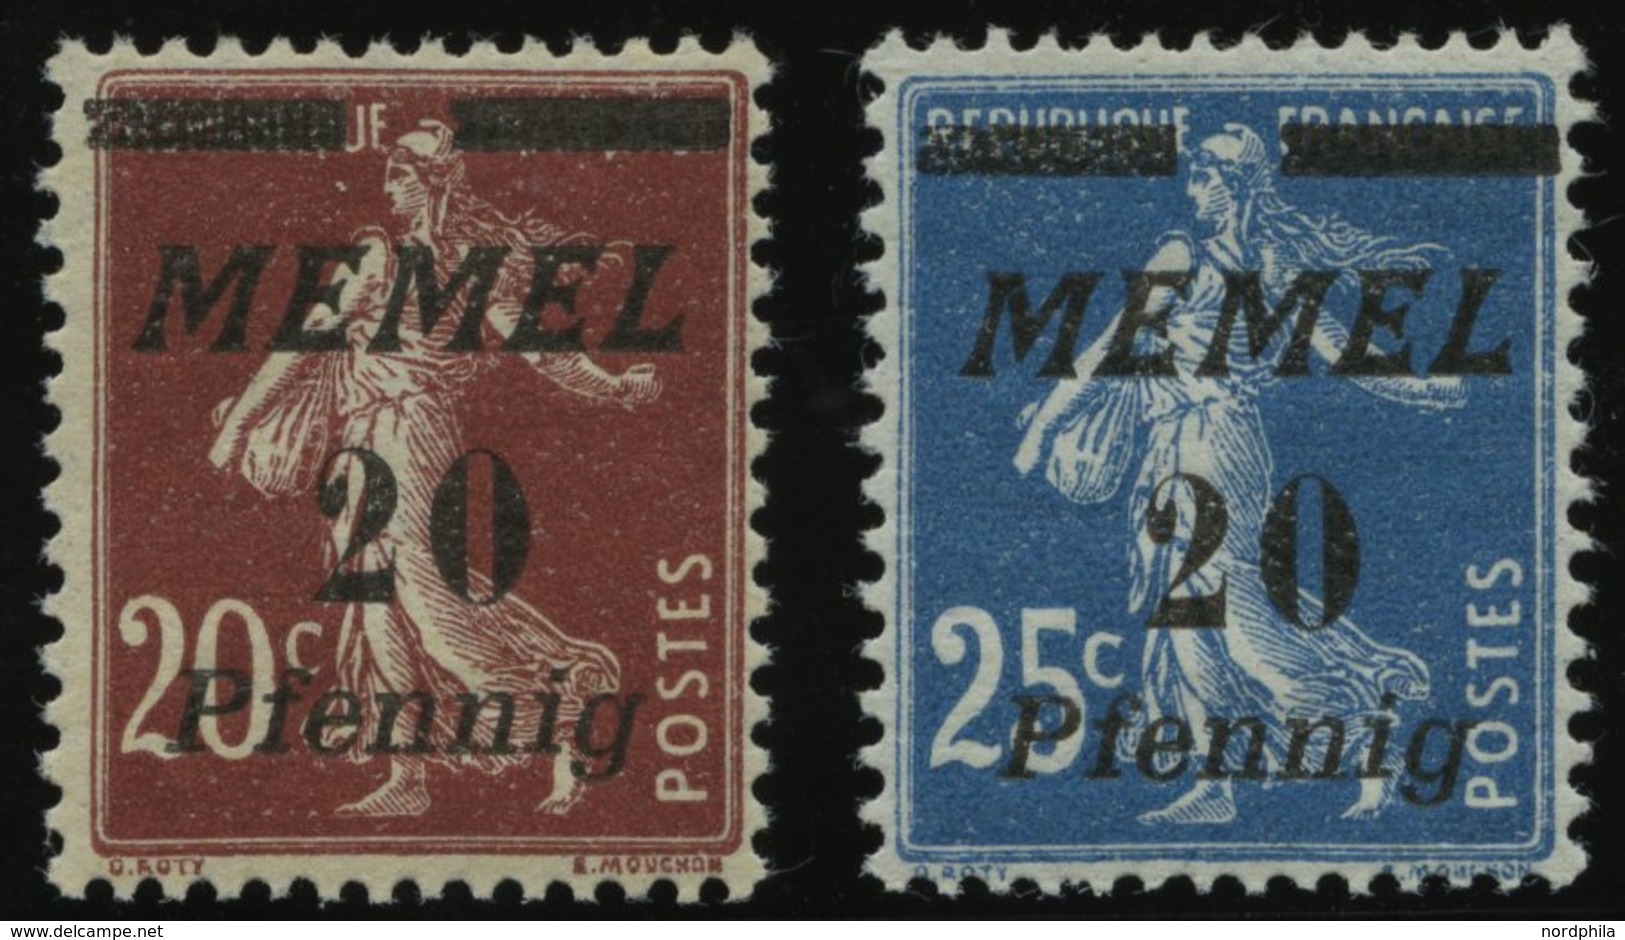 MEMELGEBIET 56/7 **, 1922, 20 Pf. Auf 20 C. Graubraun Und 20 Pf. Auf 25 C. Blau, 2 Postfrische Prachtwerte, Mi. 90.- - Klaipeda 1923